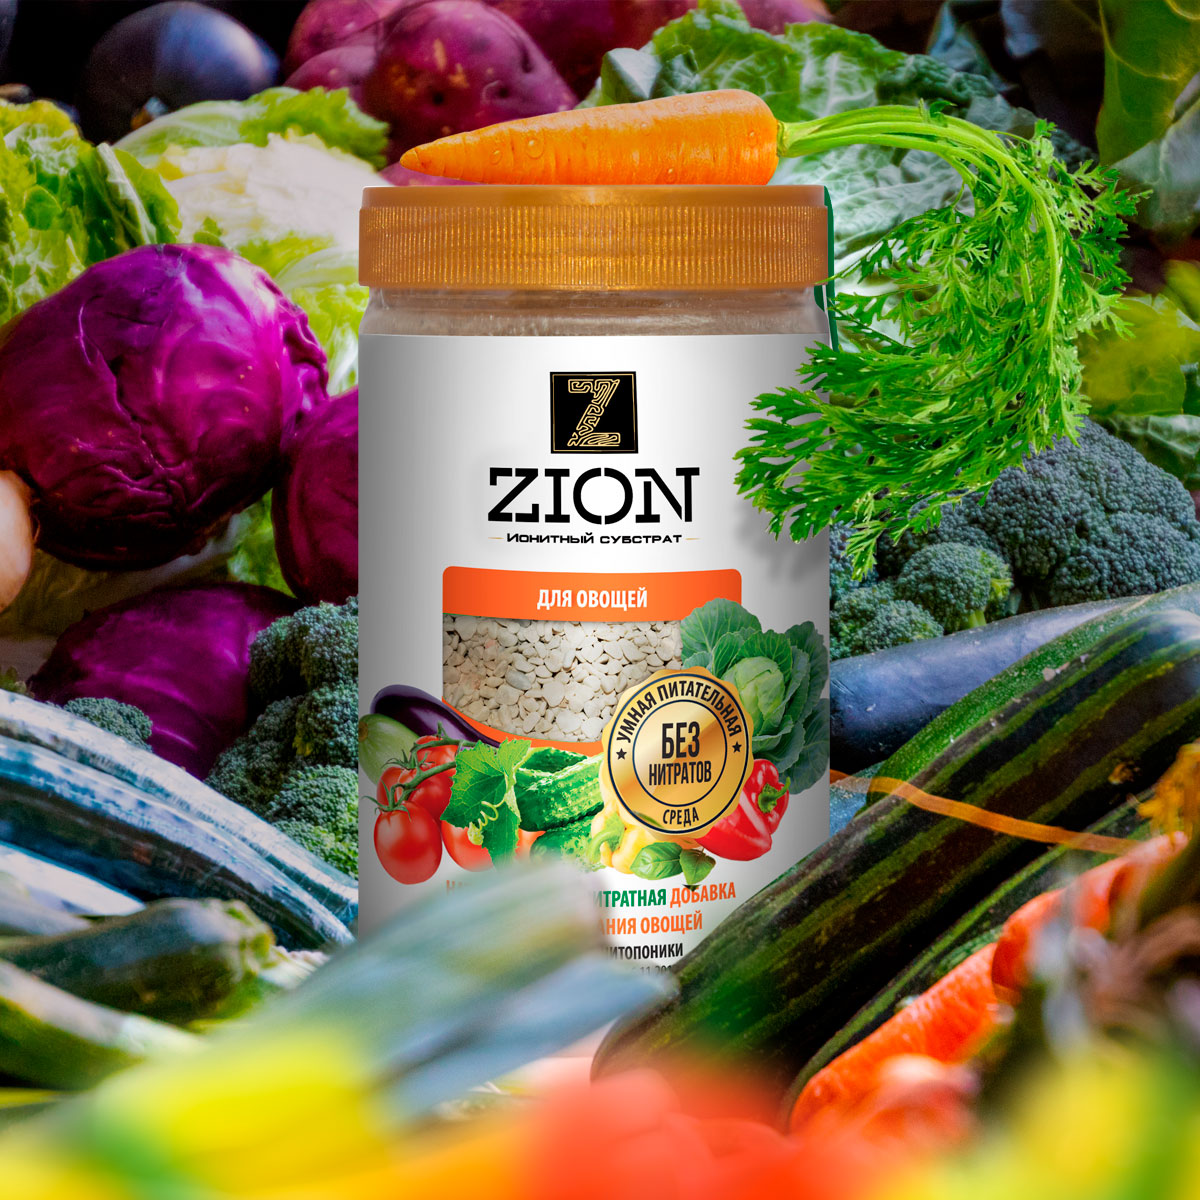 Цион для овощей отзывы. Zion ионитный субстрат. Цион удобрения универсальный. Цион для овощей 700г. Zion удобрение.